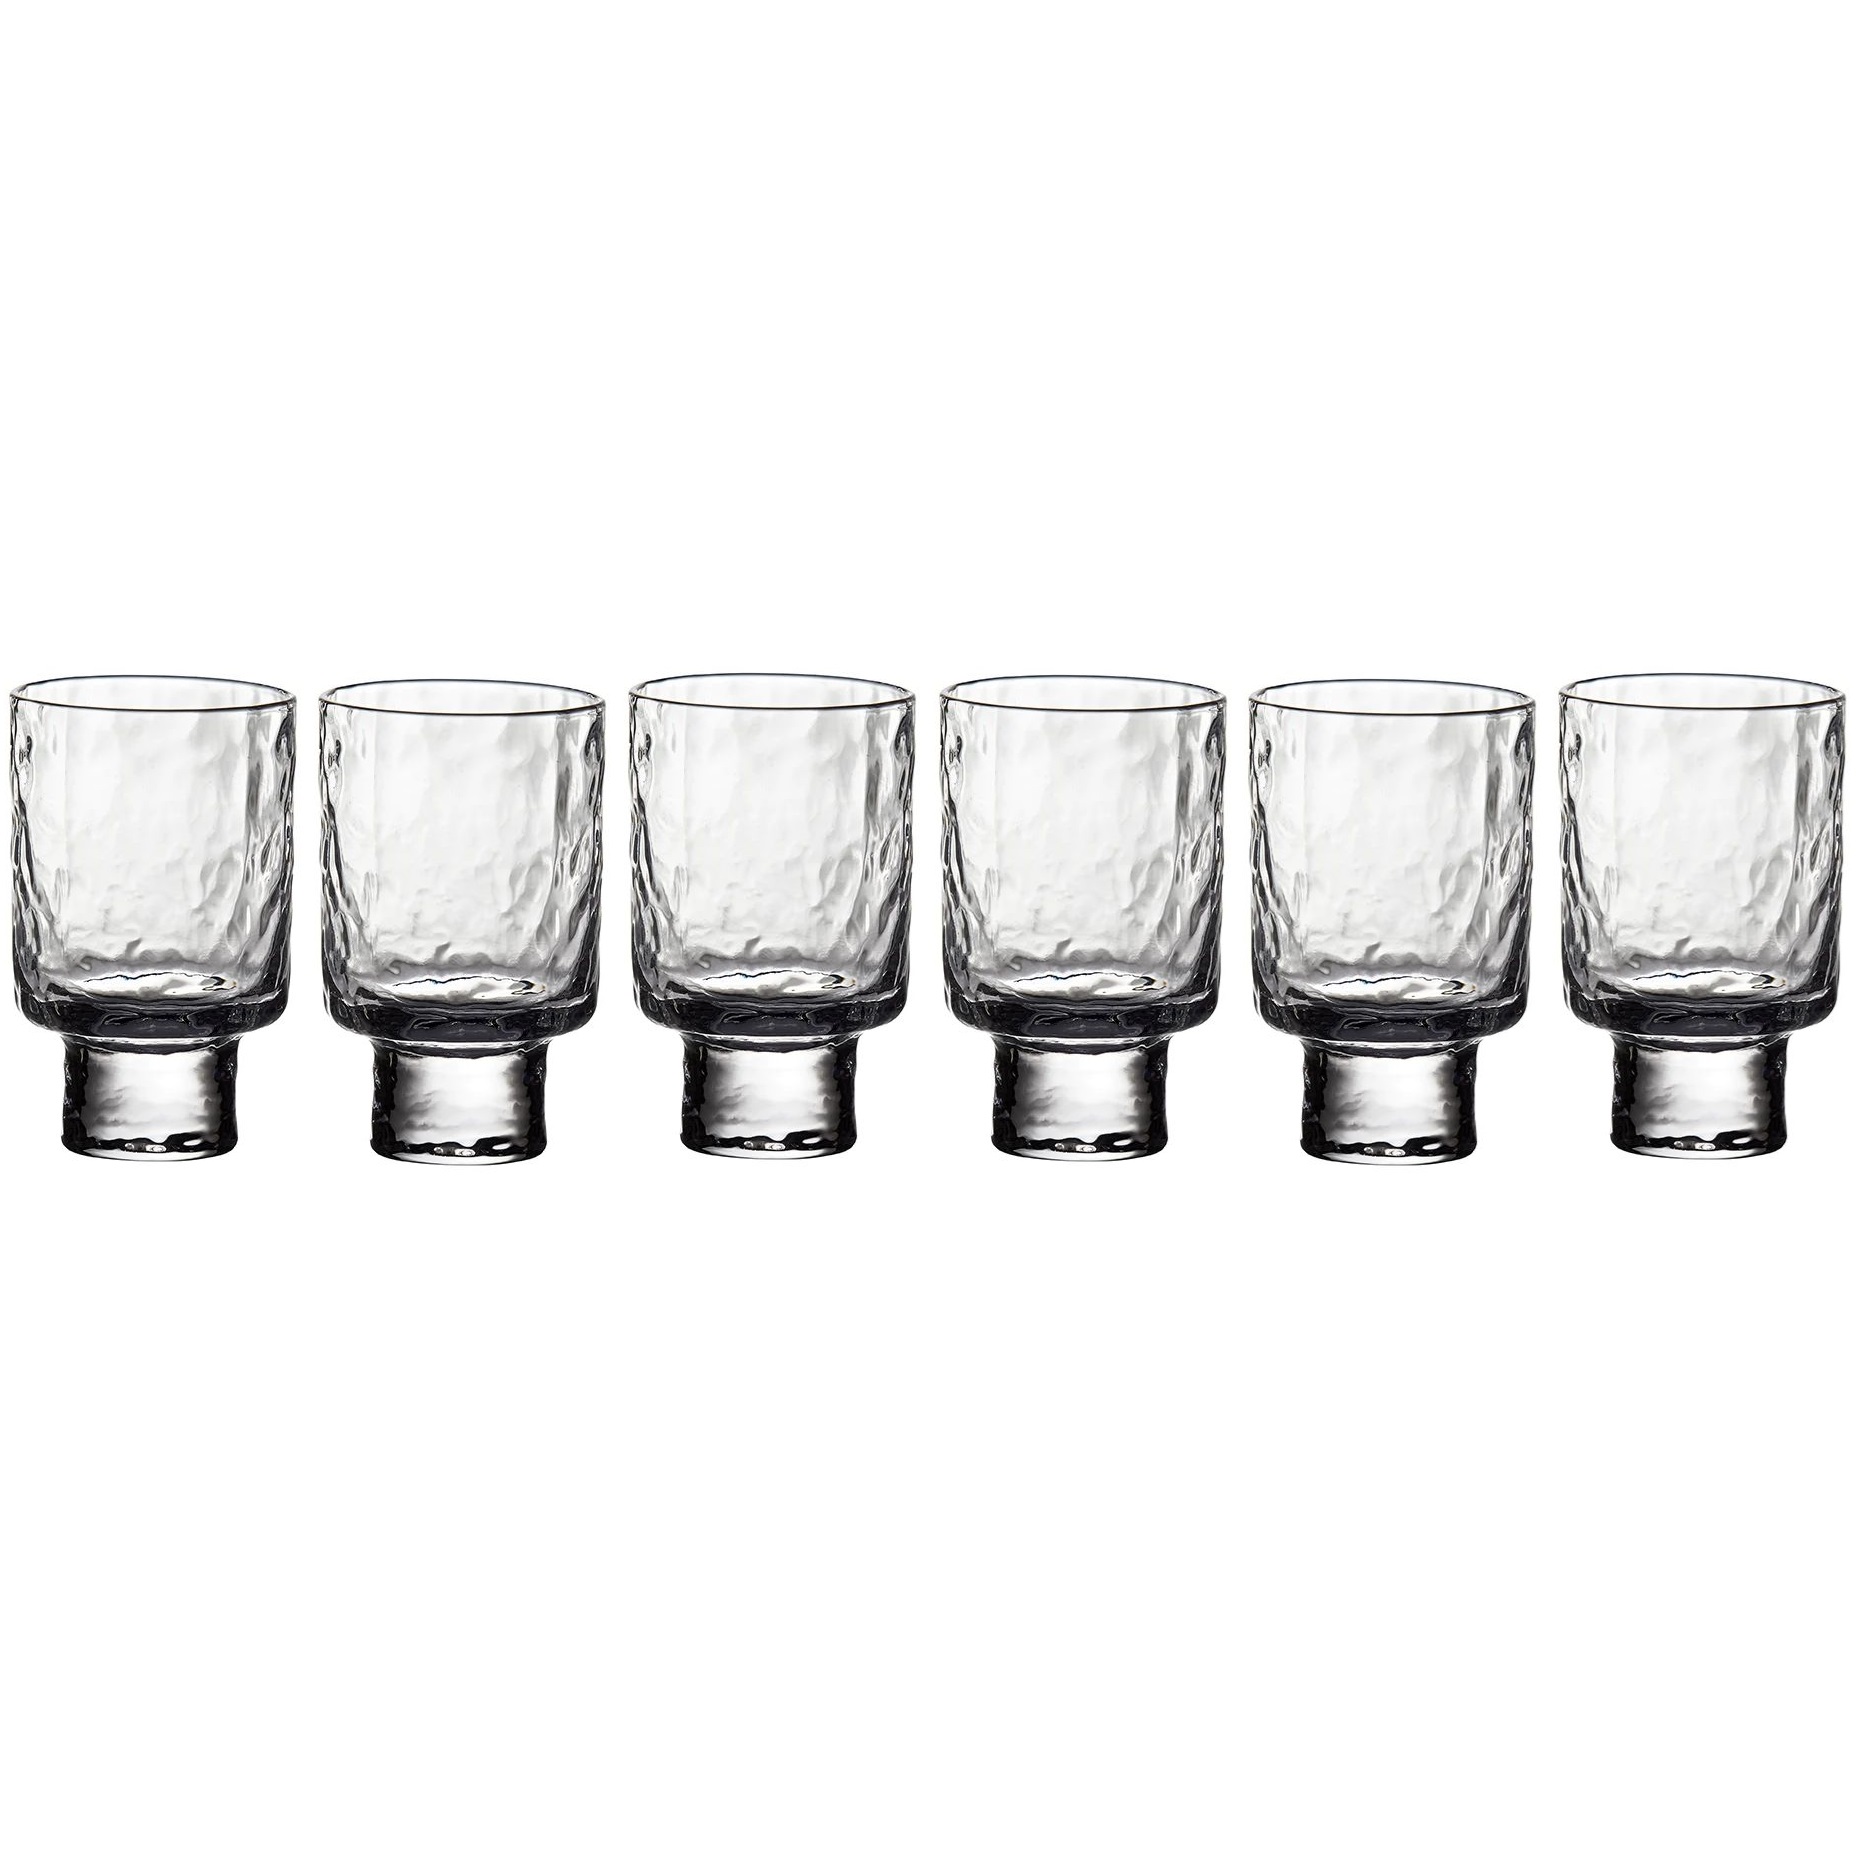 6 стаканов для воды Degrenne ROC Low Tumbler 270 мл (арт. 236340)